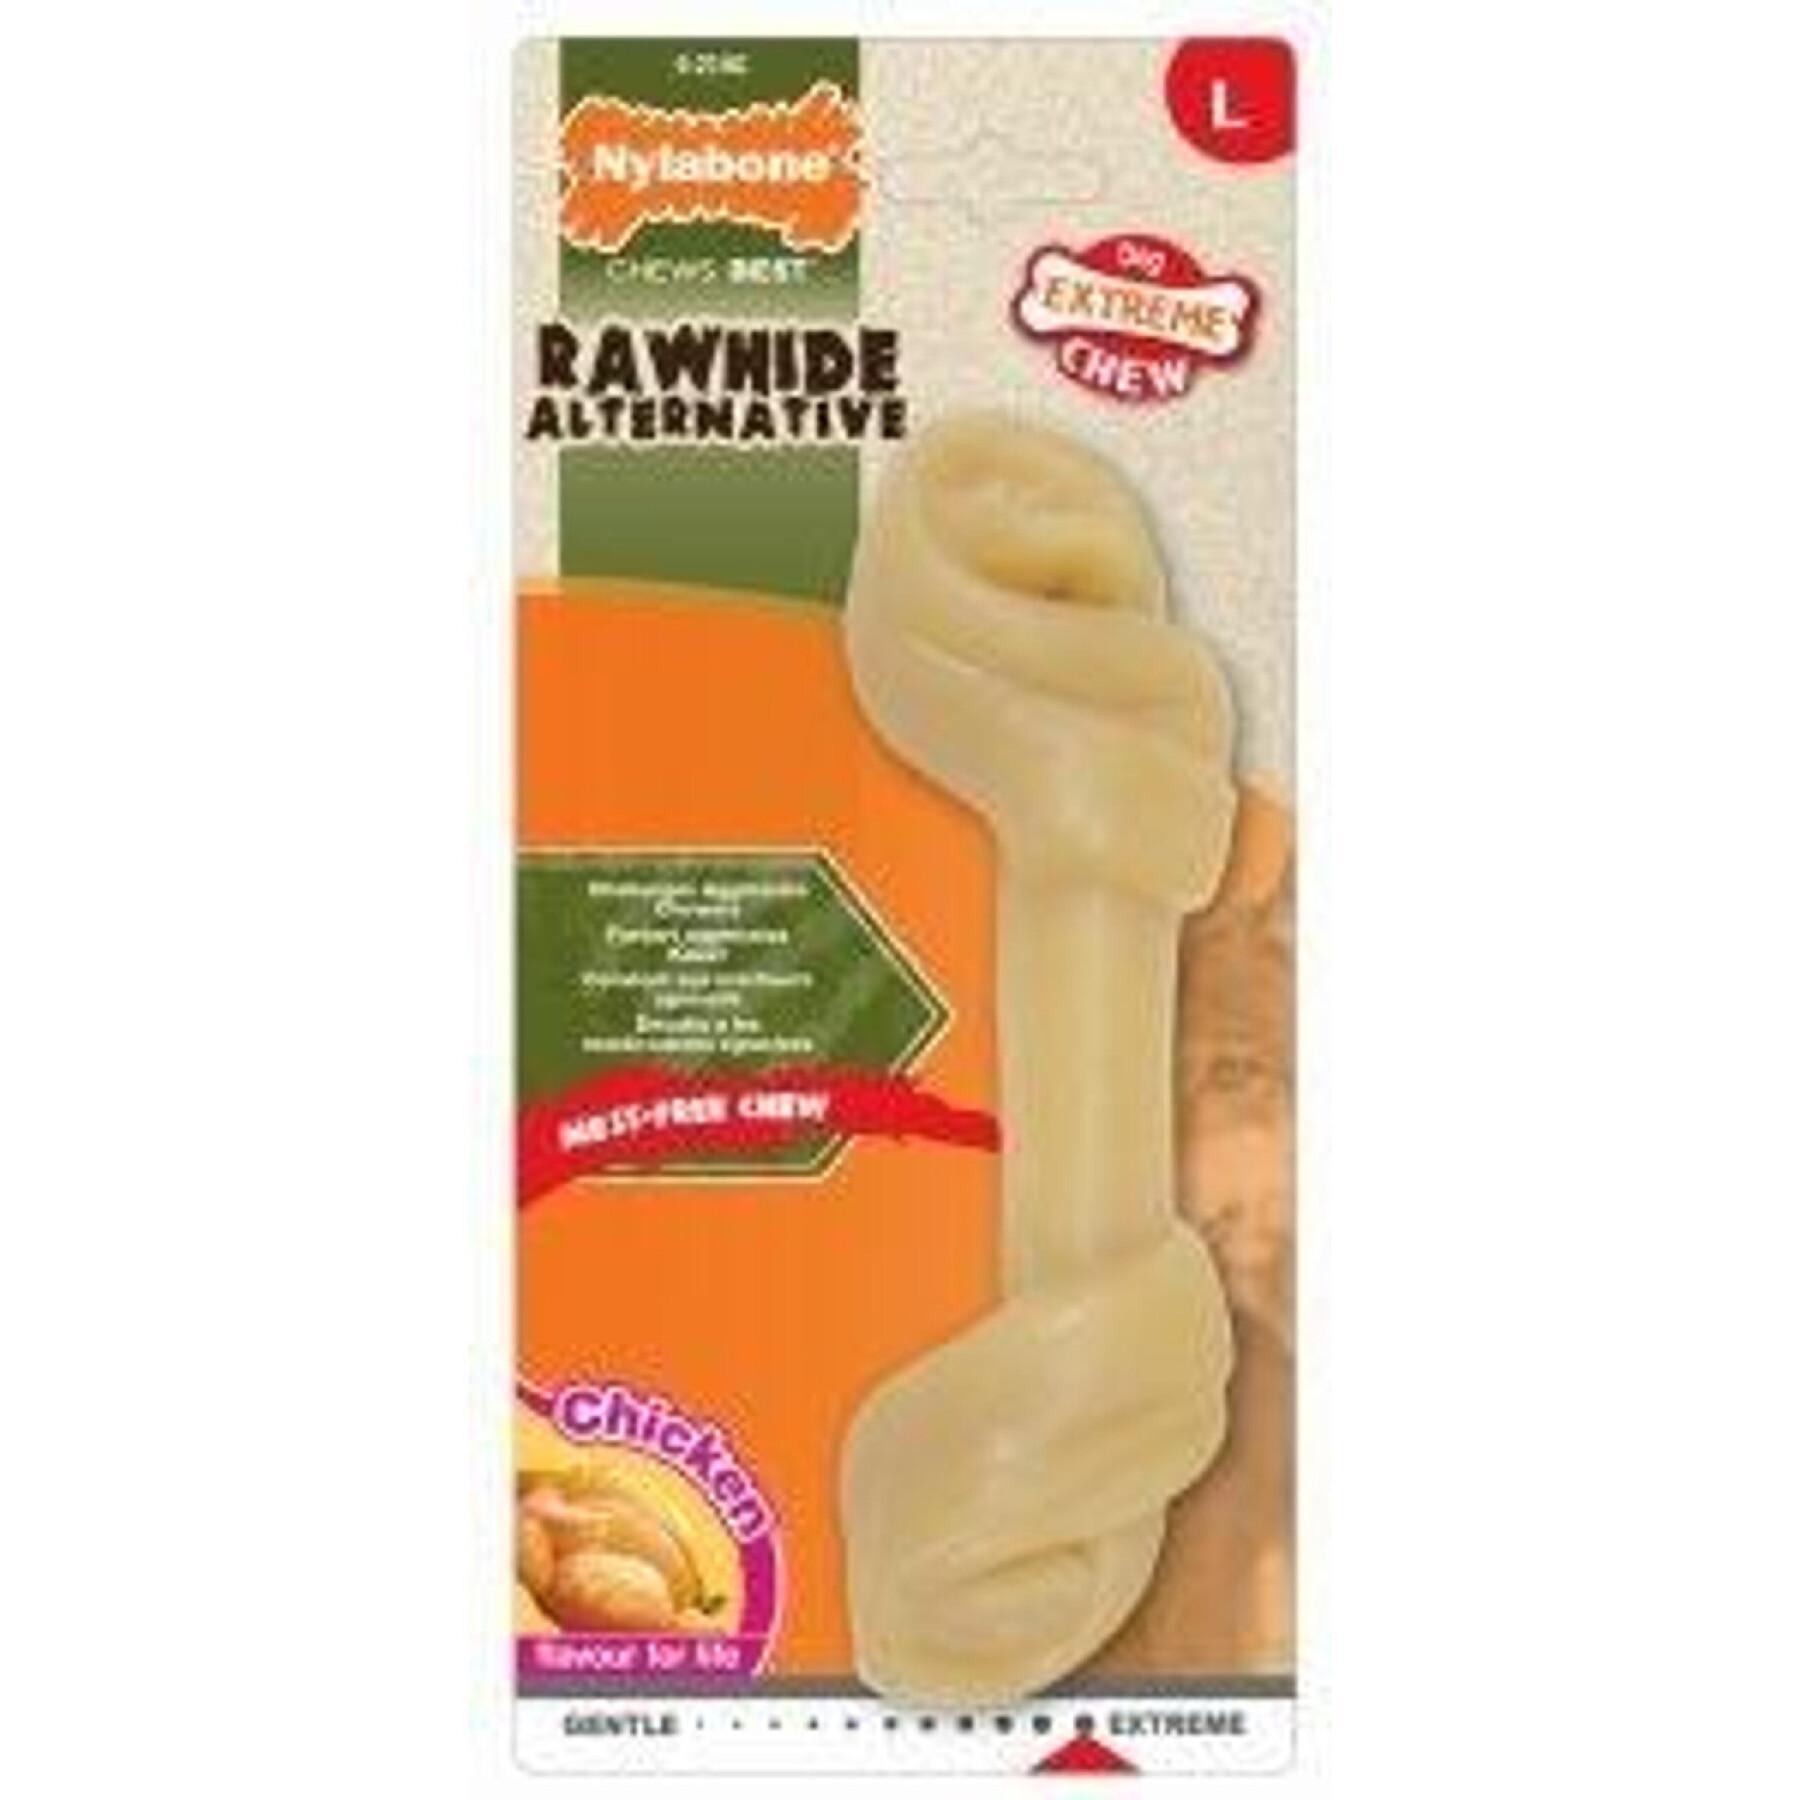 Hondenspeelgoed Nylabone Extreme Chew - Knot Original Flavour Chicken L